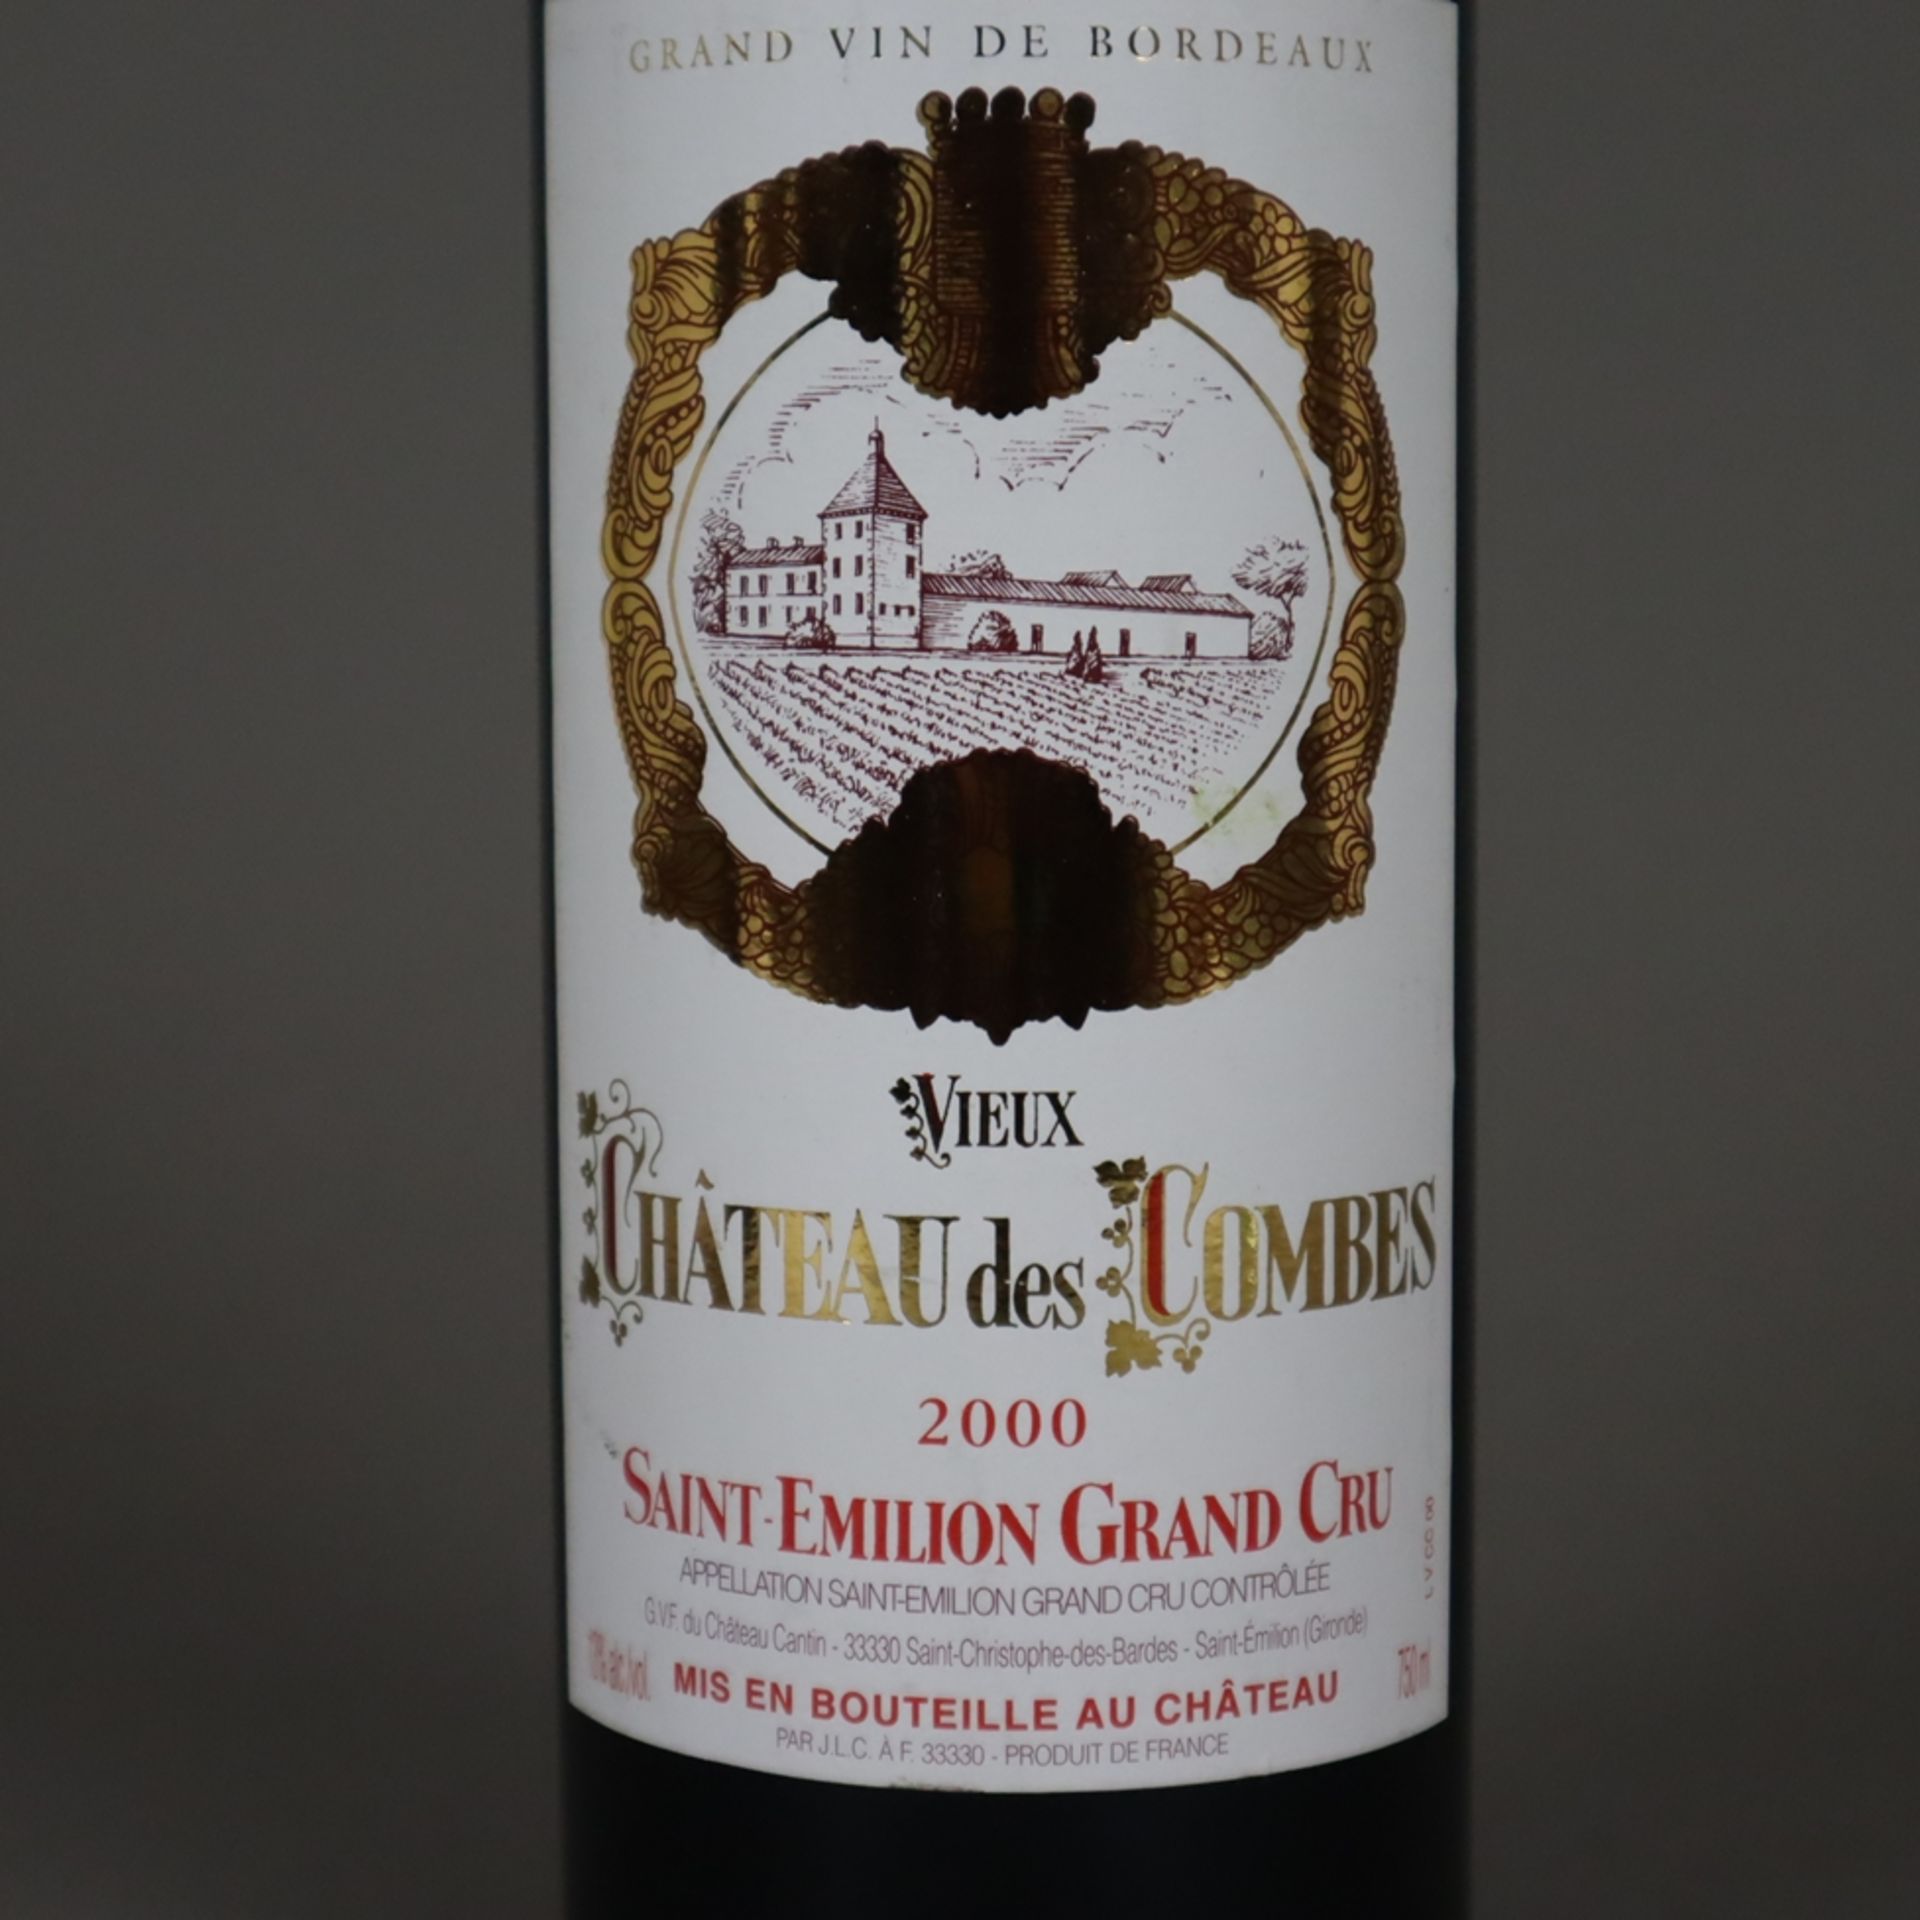 Weinkonvolut - 2 Flaschen, Vieux Château des Combes, Saint-Émilion Grand Cru 2000, jeweils 0,7 Lite - Bild 3 aus 6